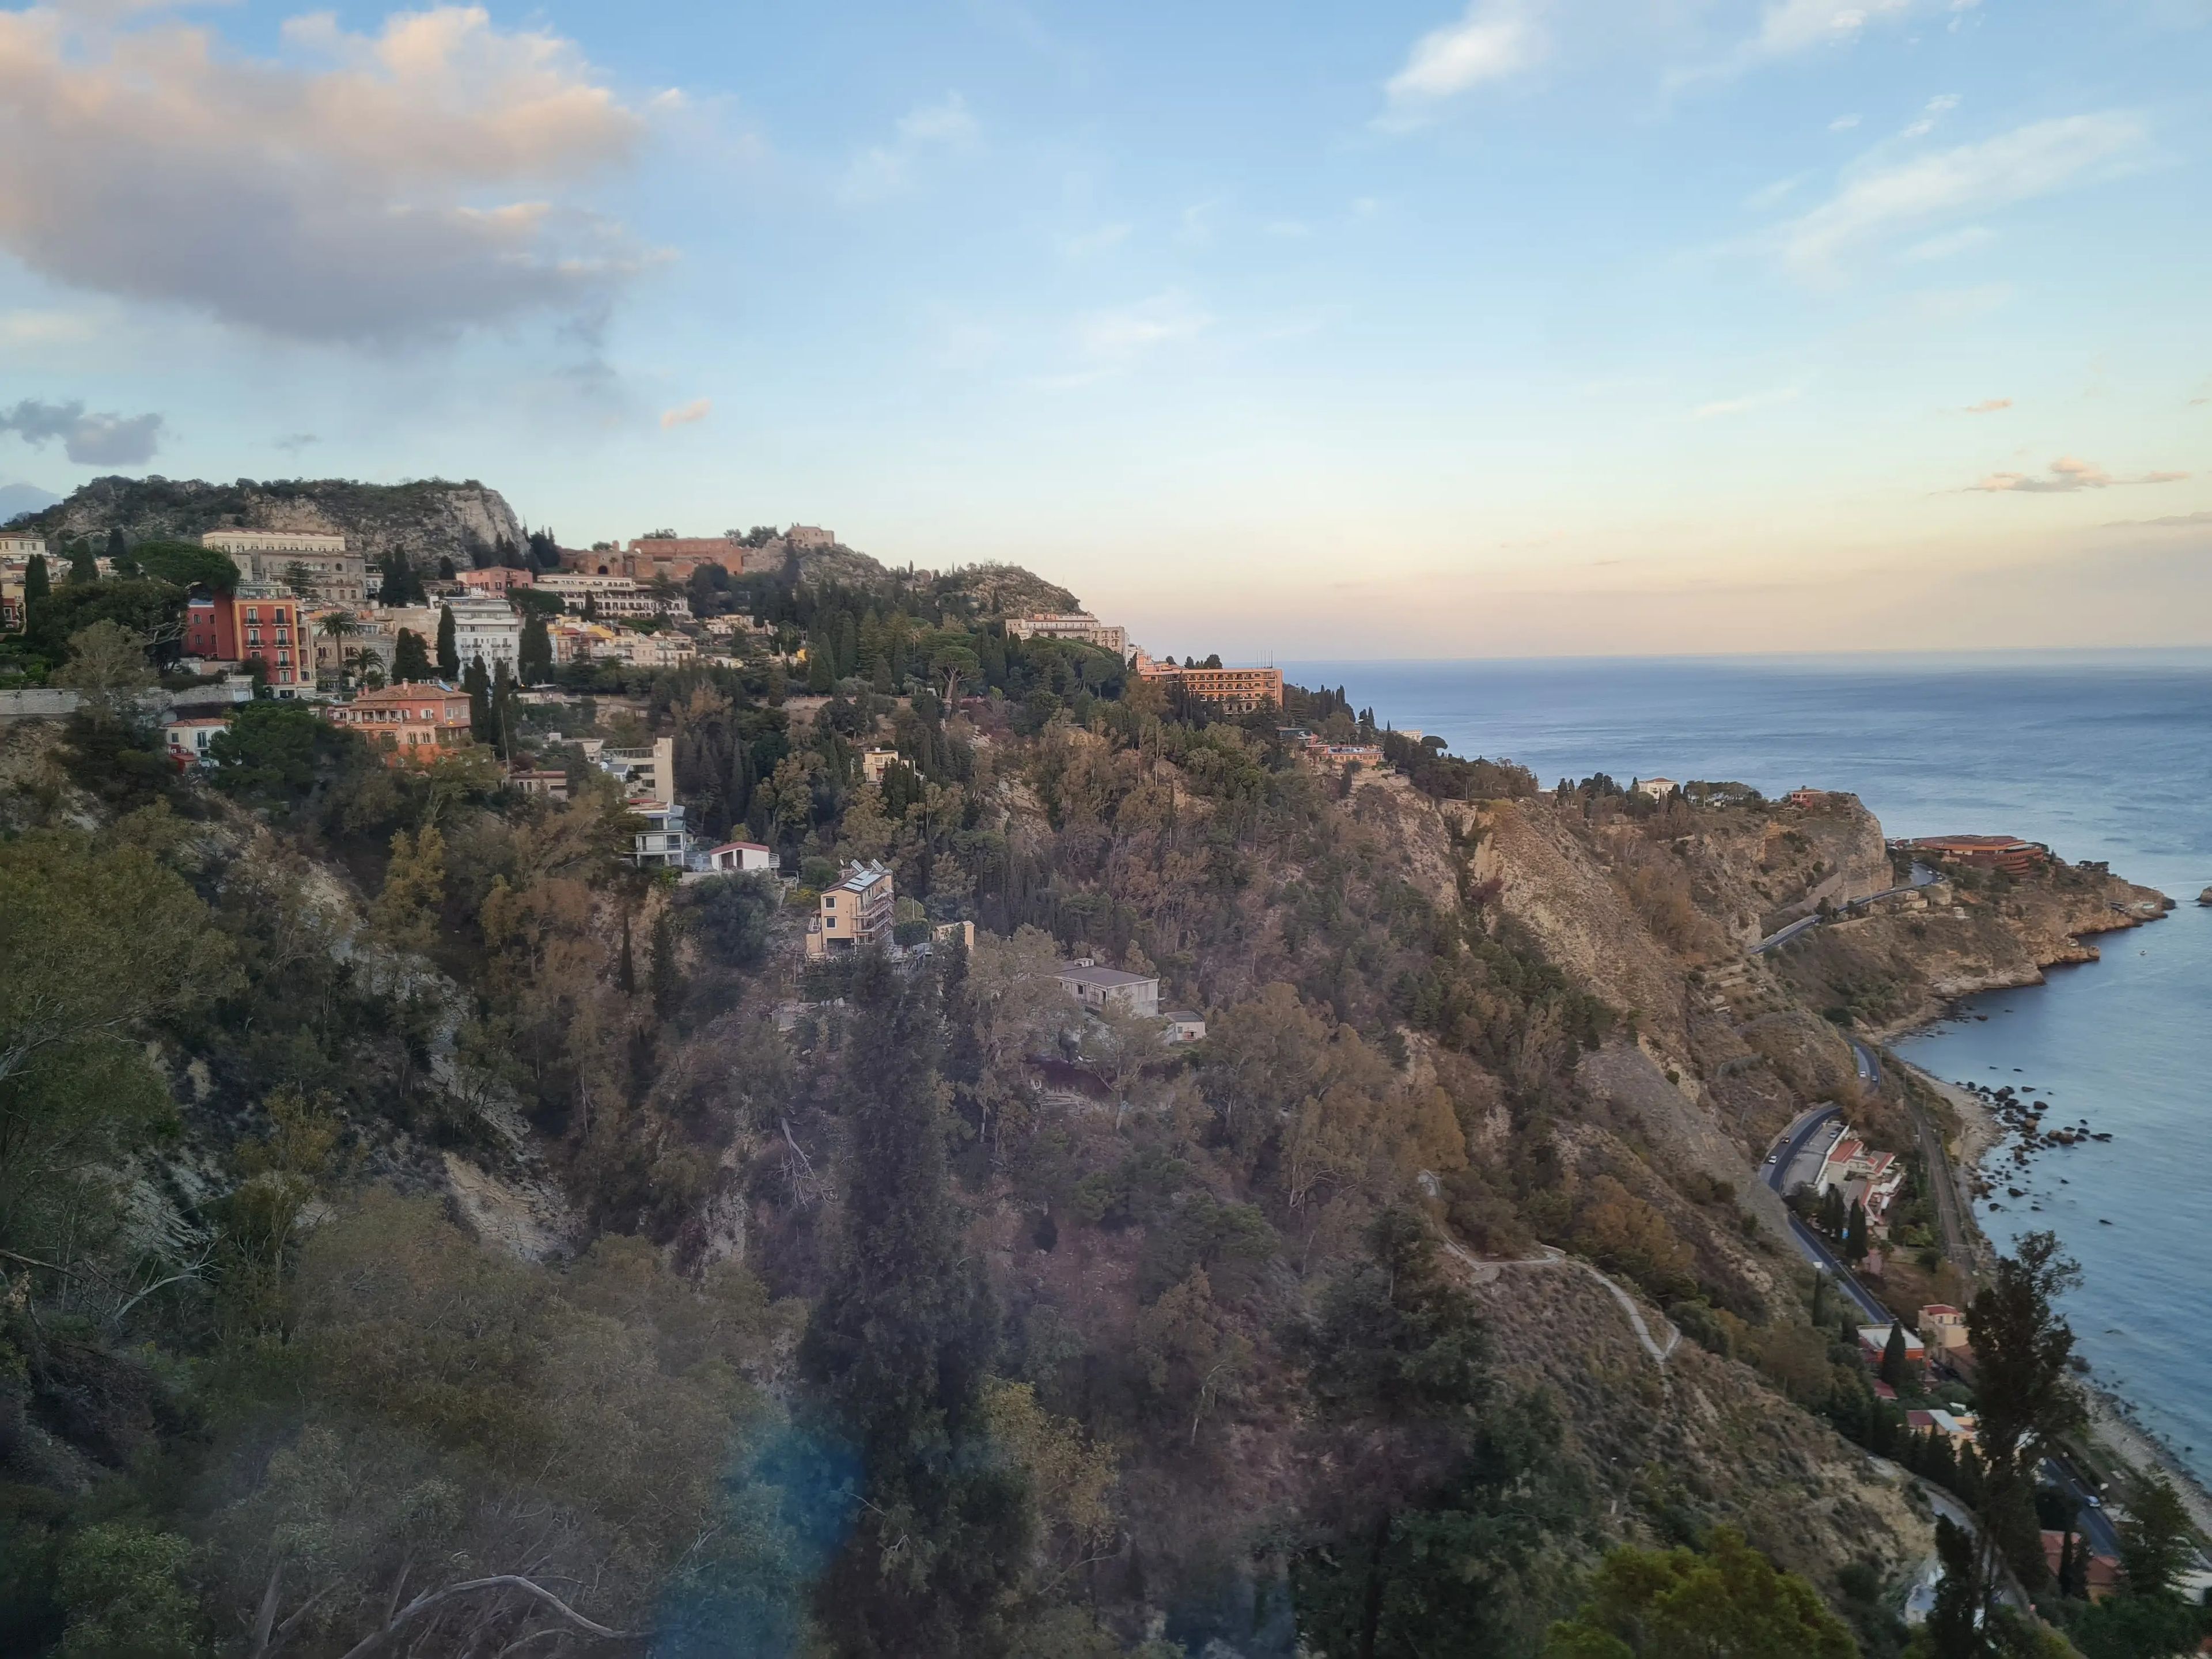 Vista de Taormina, Sicilia, desde el restaurante Principe Cerami del hotel.